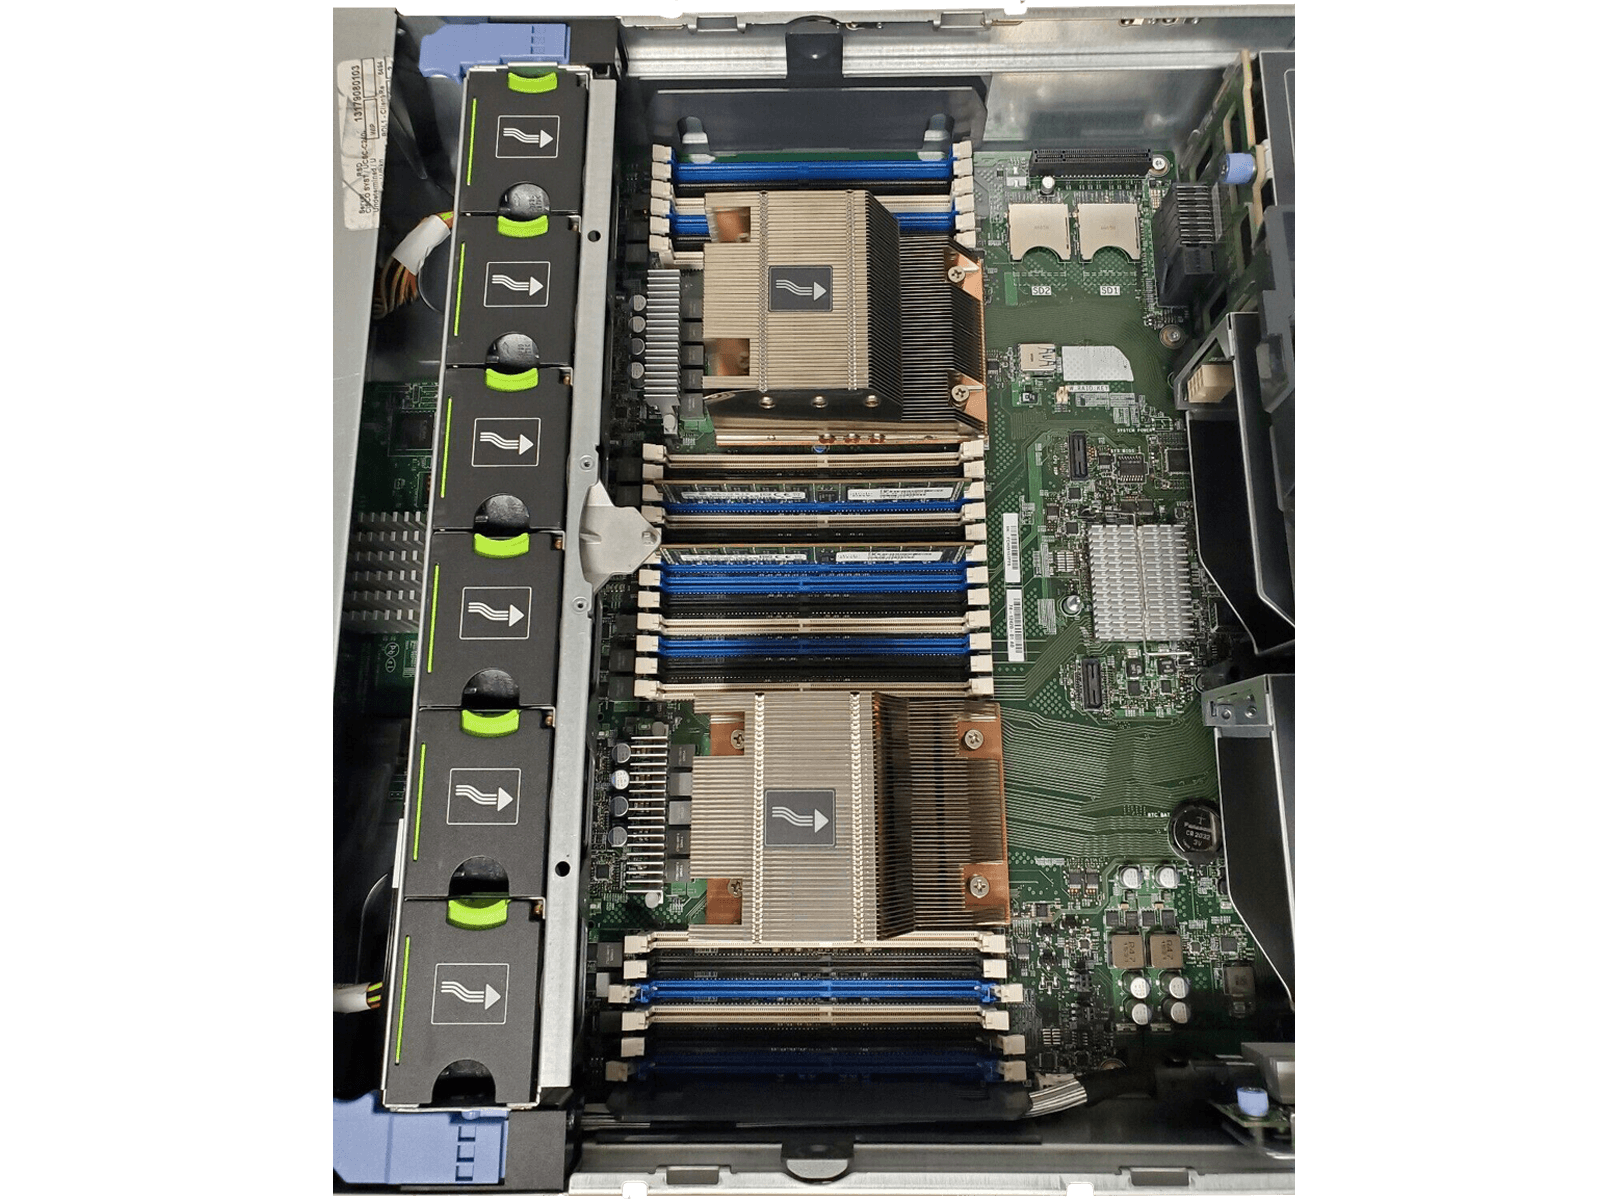 Cisco UCS C240 M4 Server 24-bay SFF 2x E5-2640V3 2.6GHz 8-core 64GB 2x 300GB 10k 2x1400W PSU